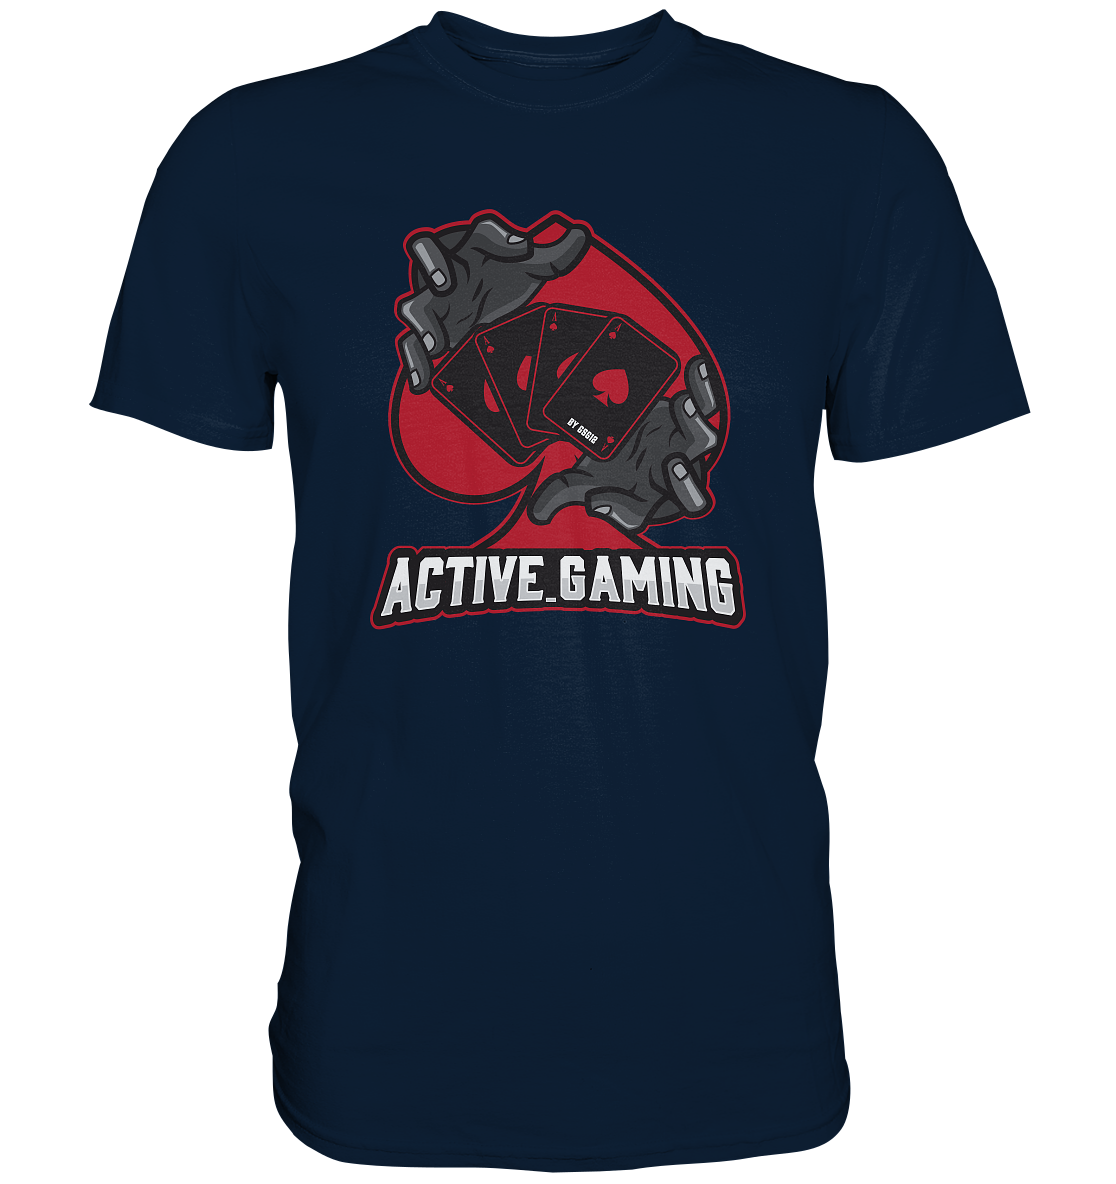 ACTIVE GAMING - Basic Shirt